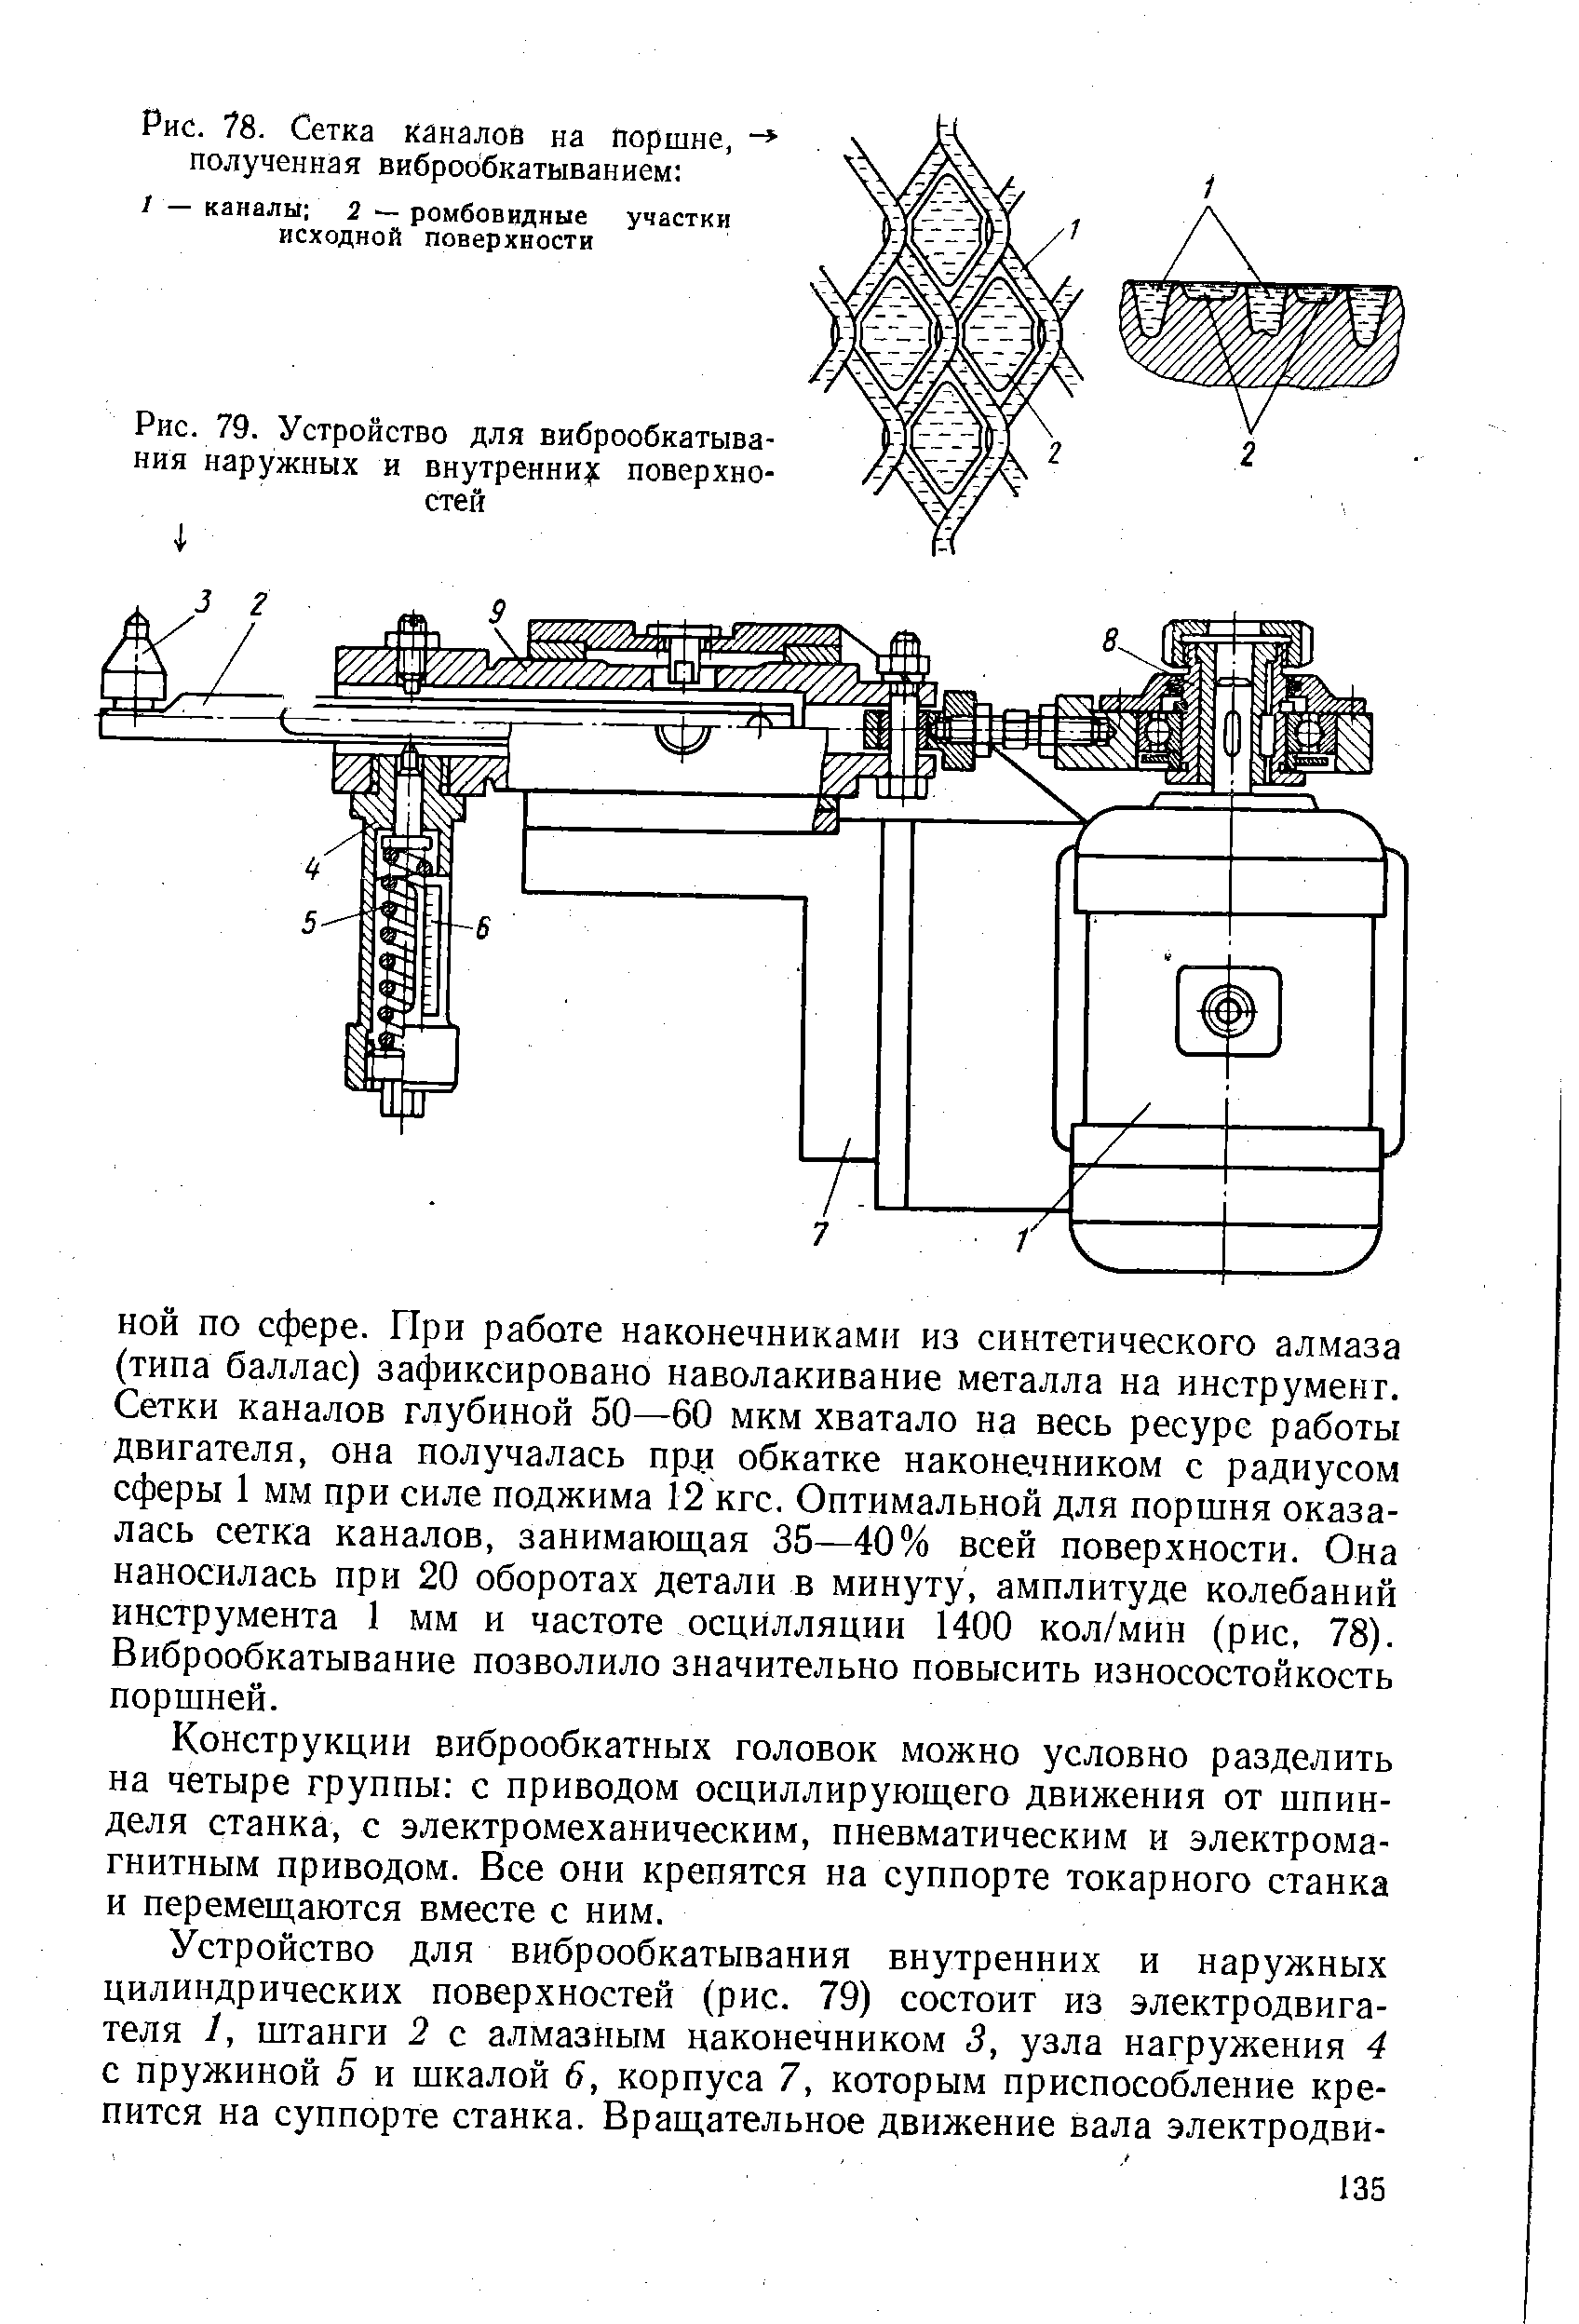 Рис. 79. Устройство для виброобкатывания наружных и внутренни с поверхностей
